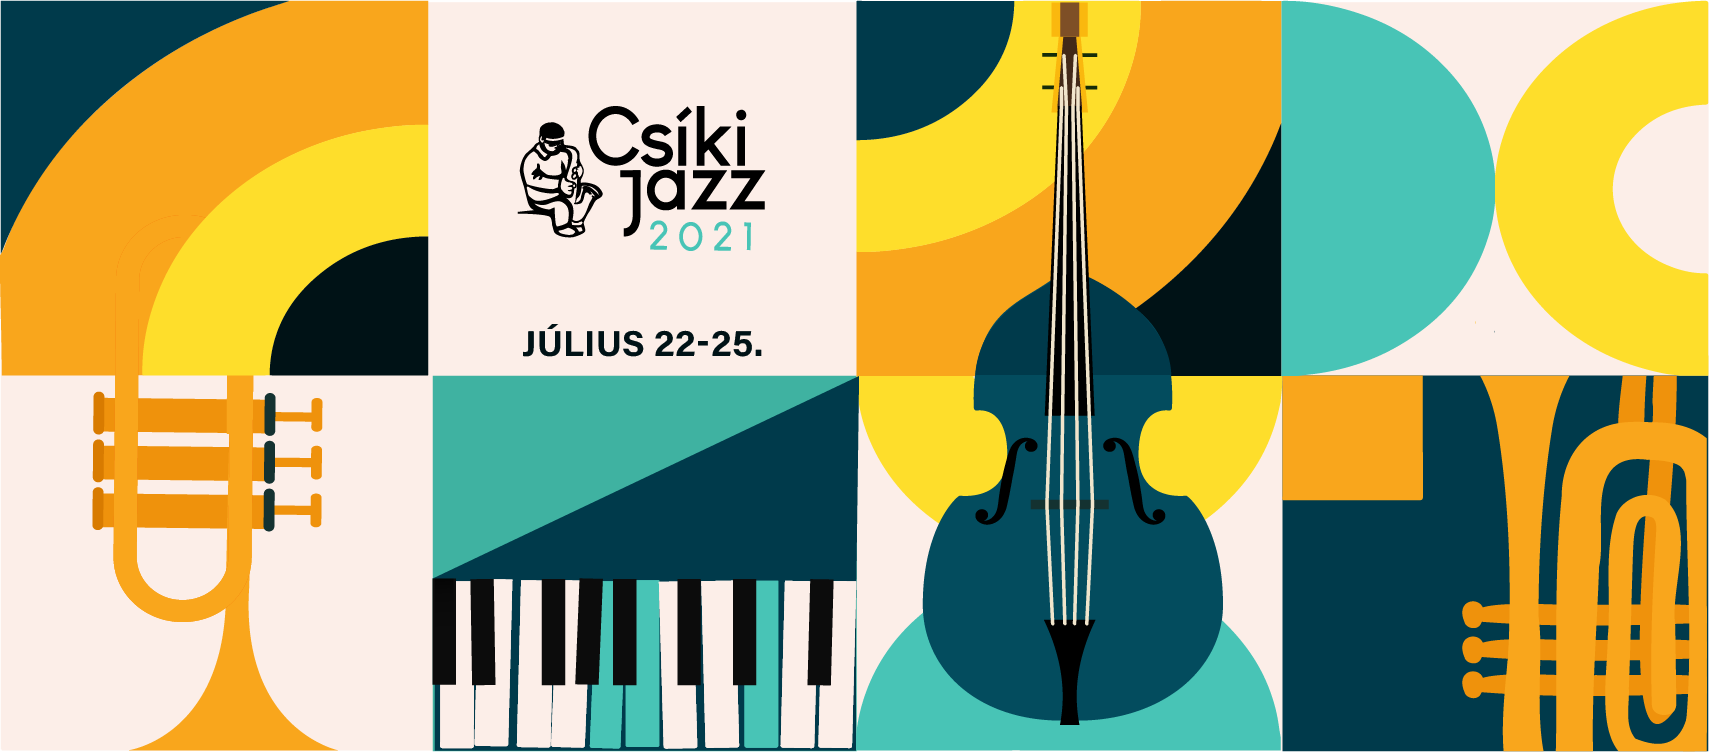 Festivalul Internaţional de Jazz – Miercurea-Ciuc